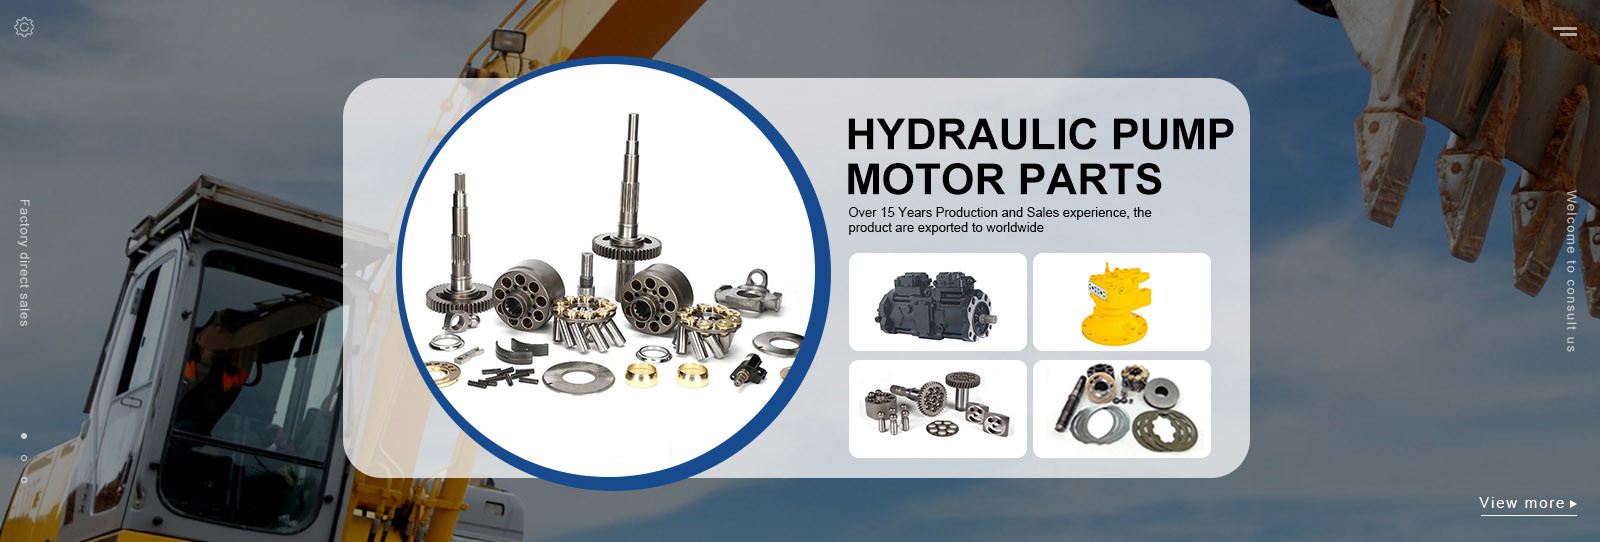 Hydraulic Pump Motor Parts